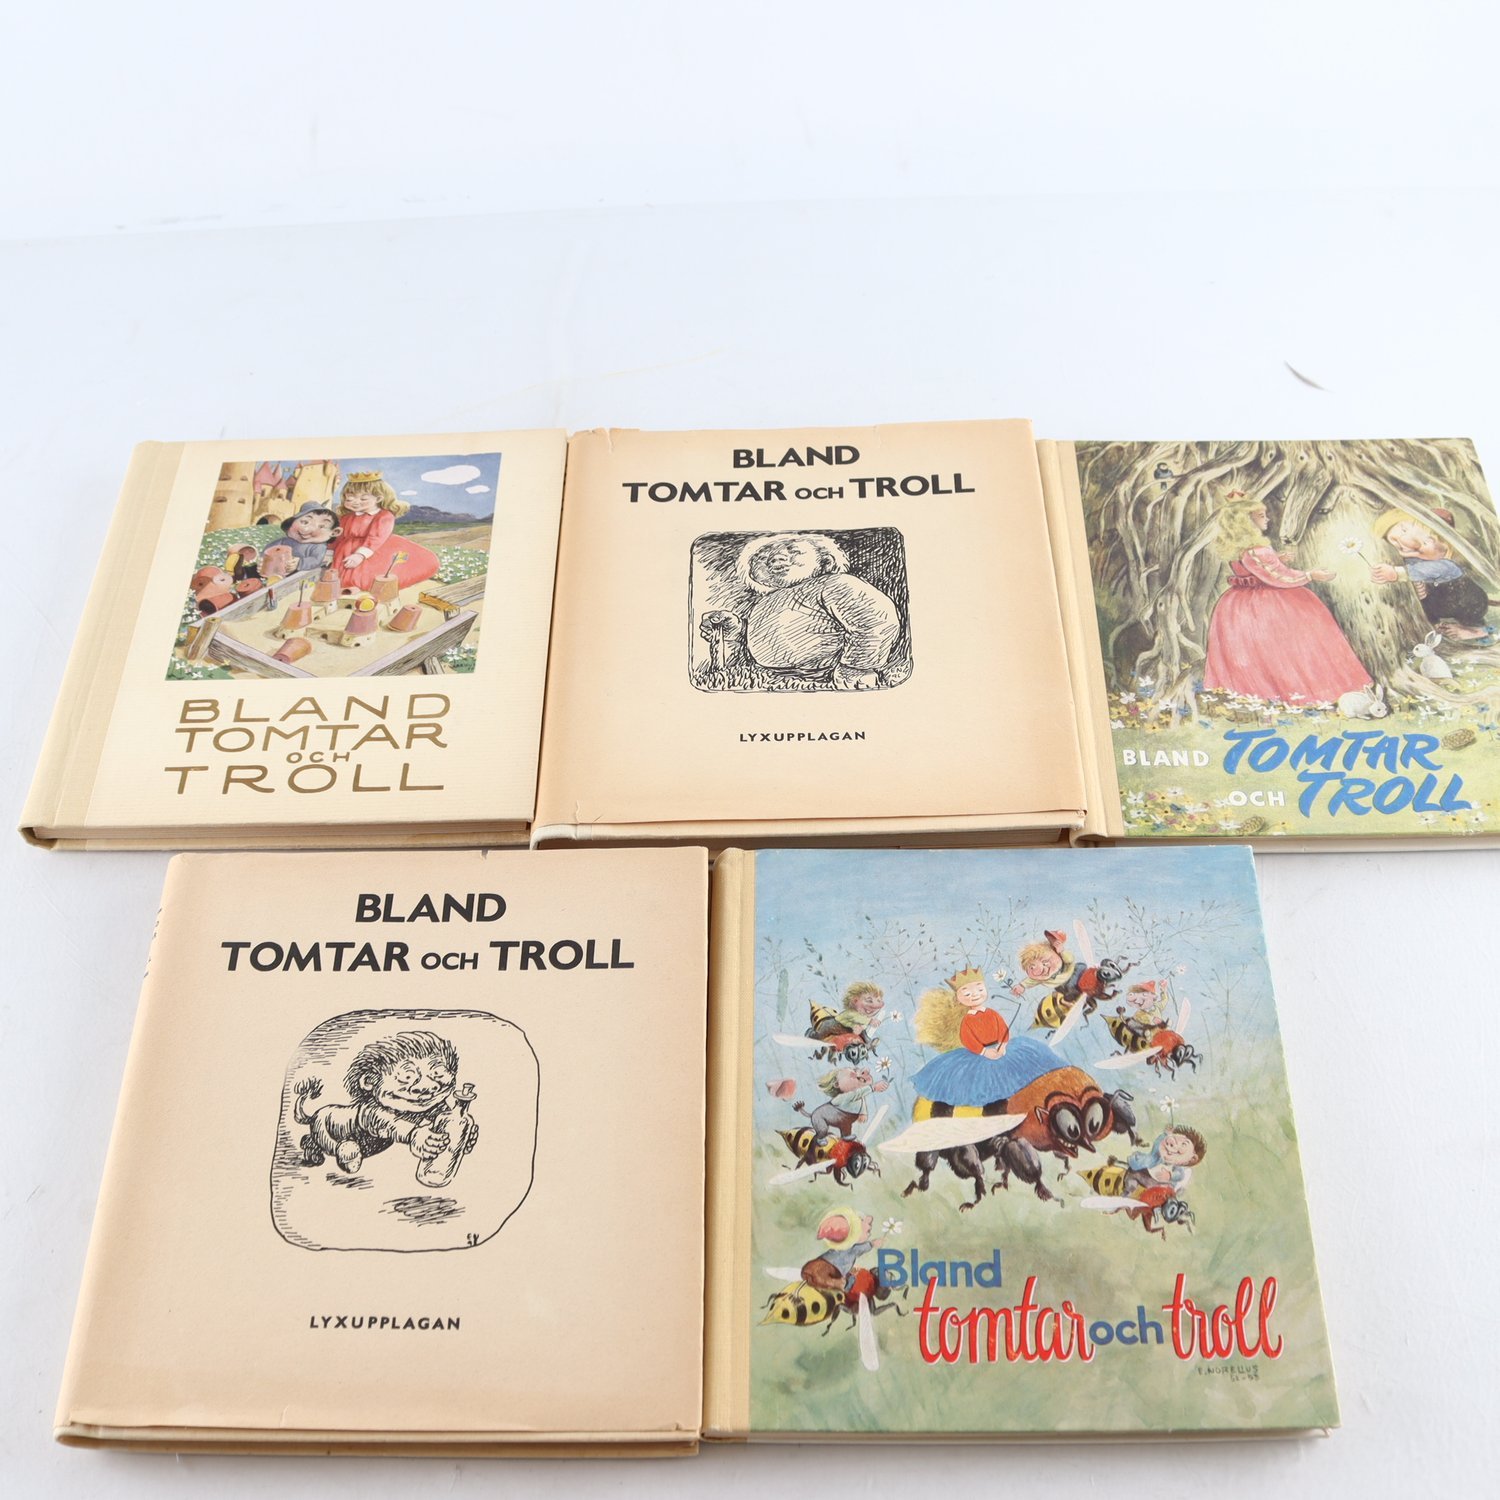 Bland tomtar och troll, 5 vol. varav två lyxupplagor, utgivna 1946-1953